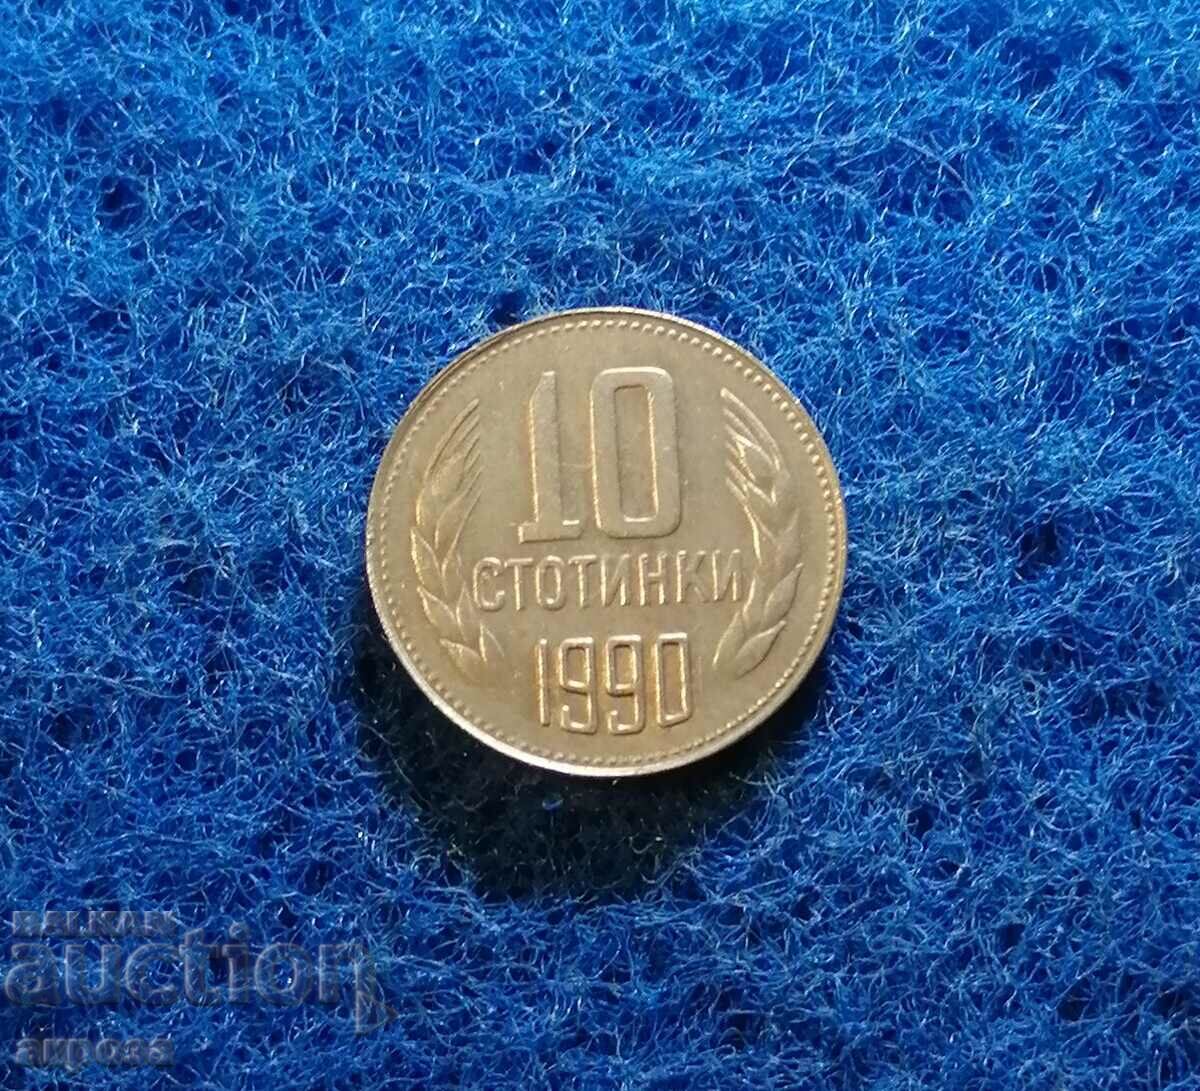 10 cenți 1990